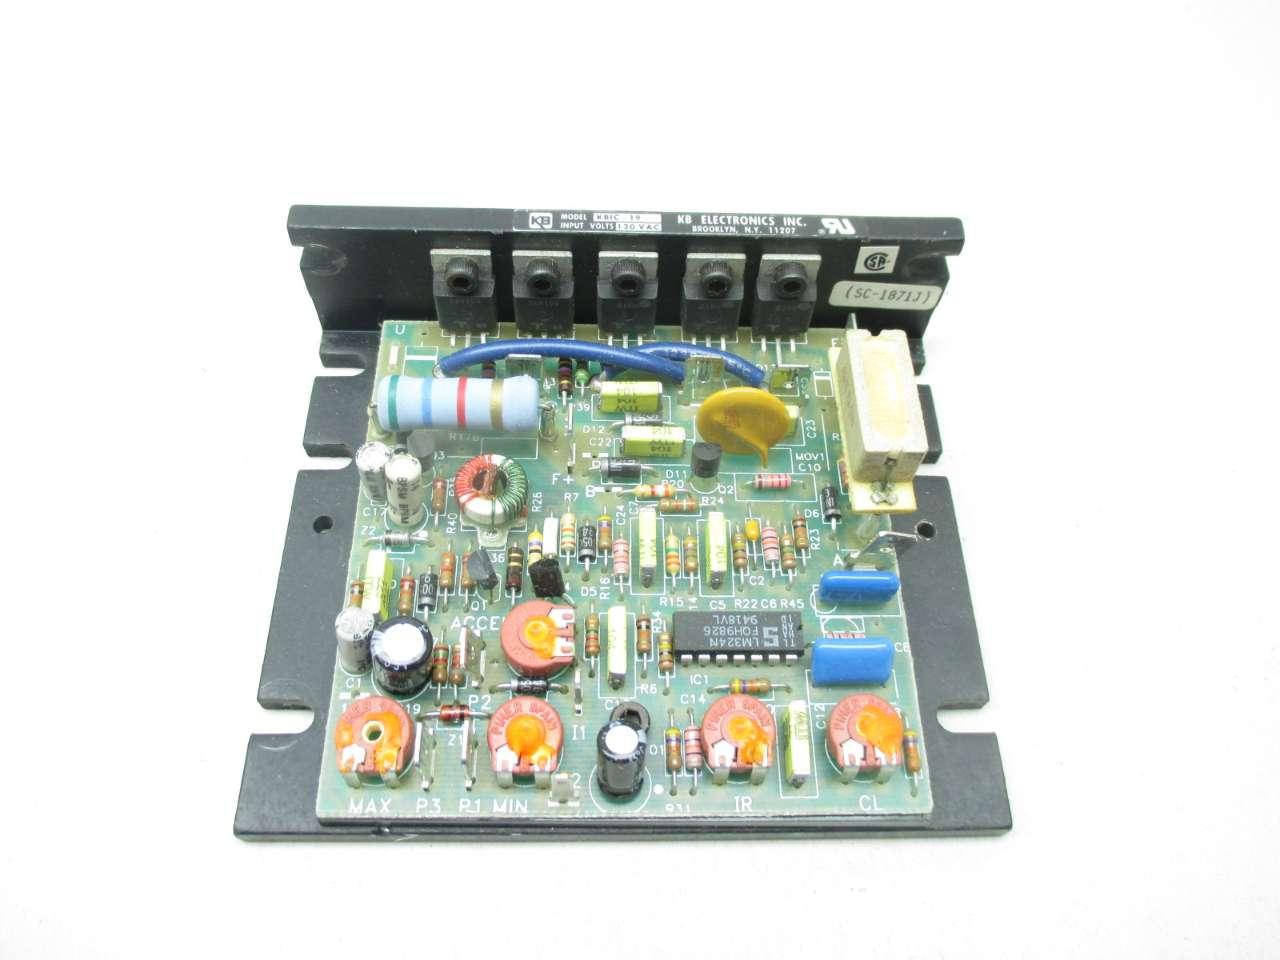 Input 120V Output 0-90 V DC Speed Controller Type KBIC 19 for 90V DC Motor 